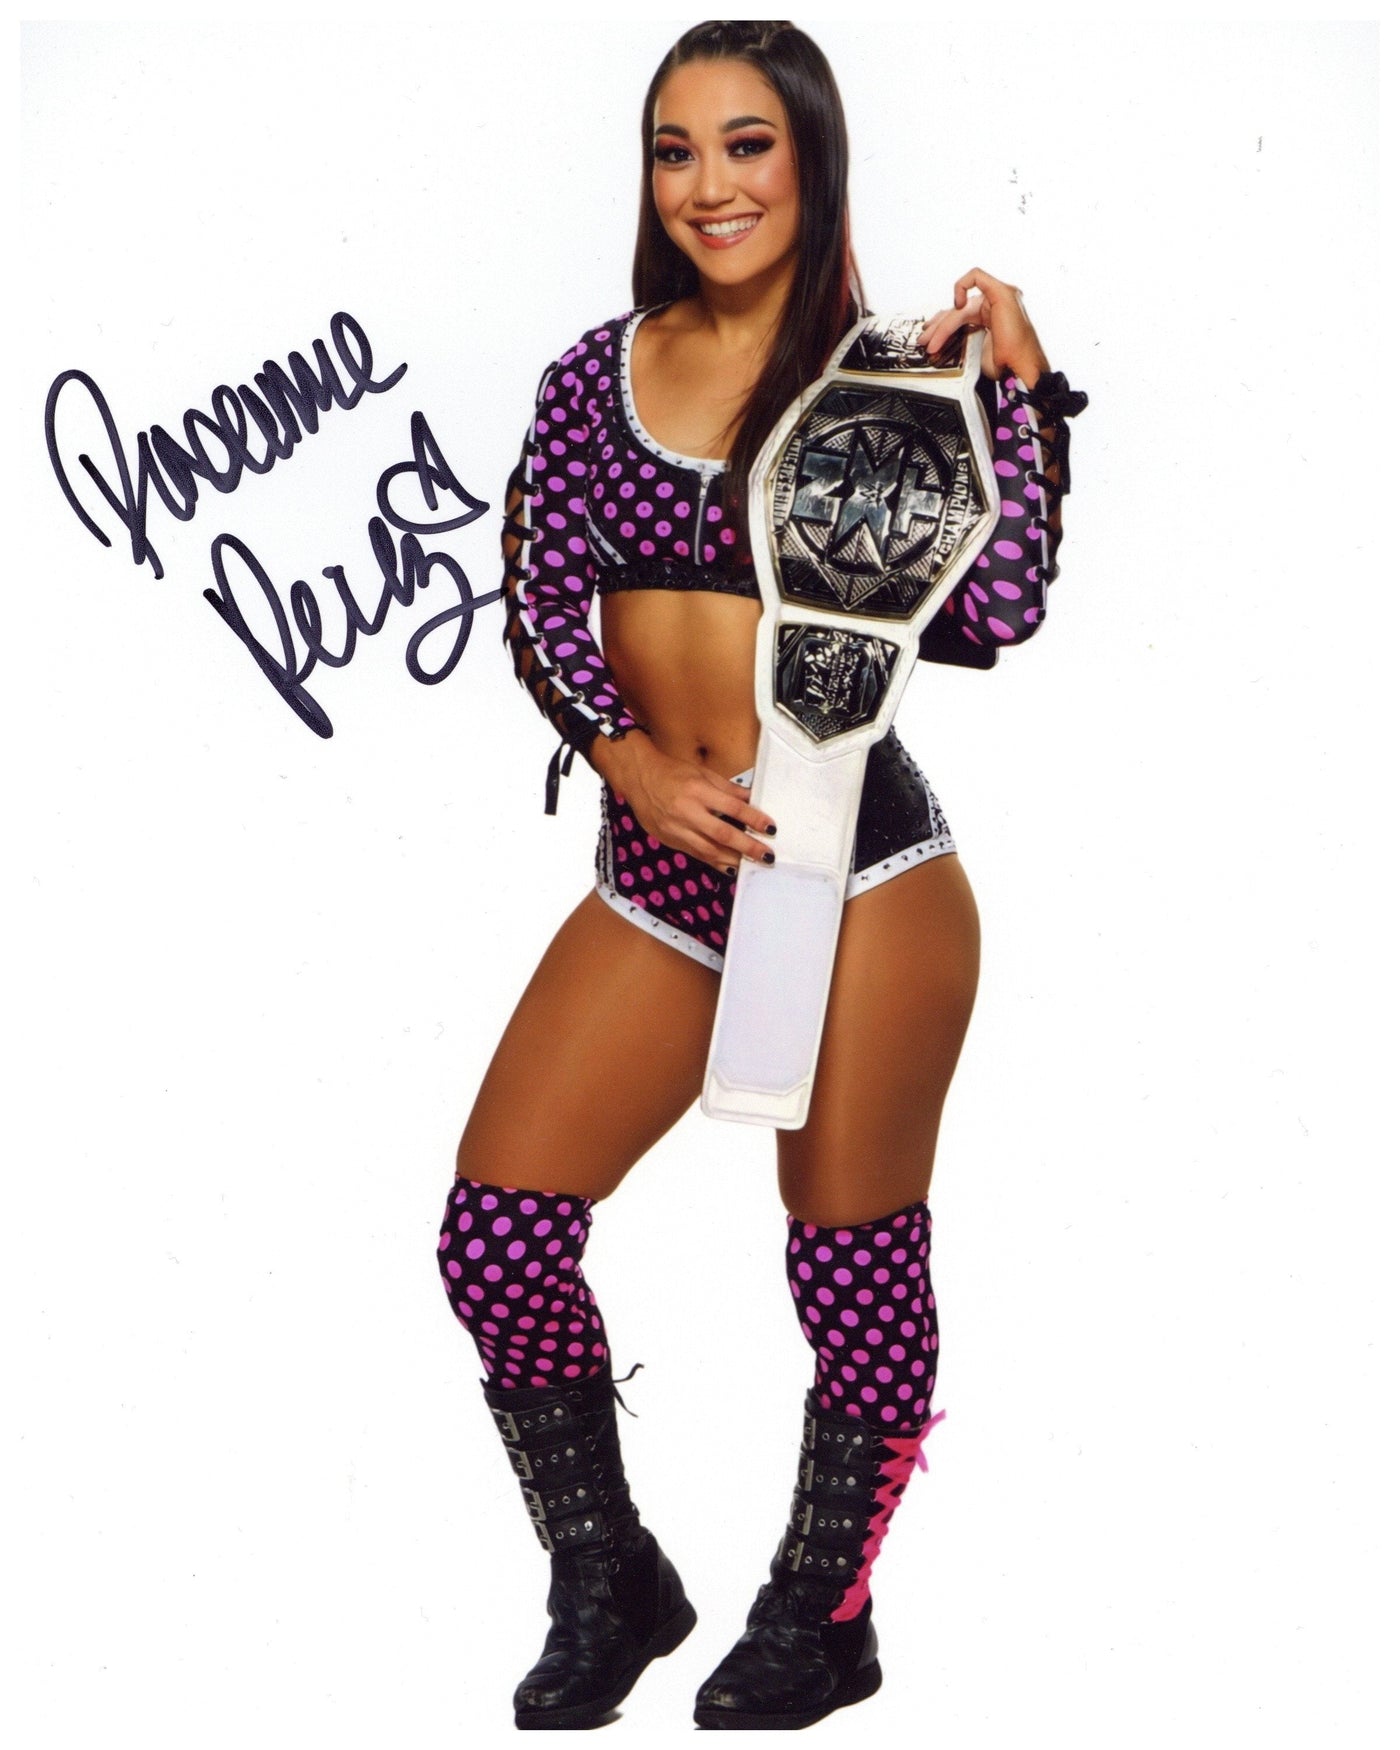 SPECIAL Roxanne Perez Signed 8x10 Photo WWE Autographed Zobie COA Z1